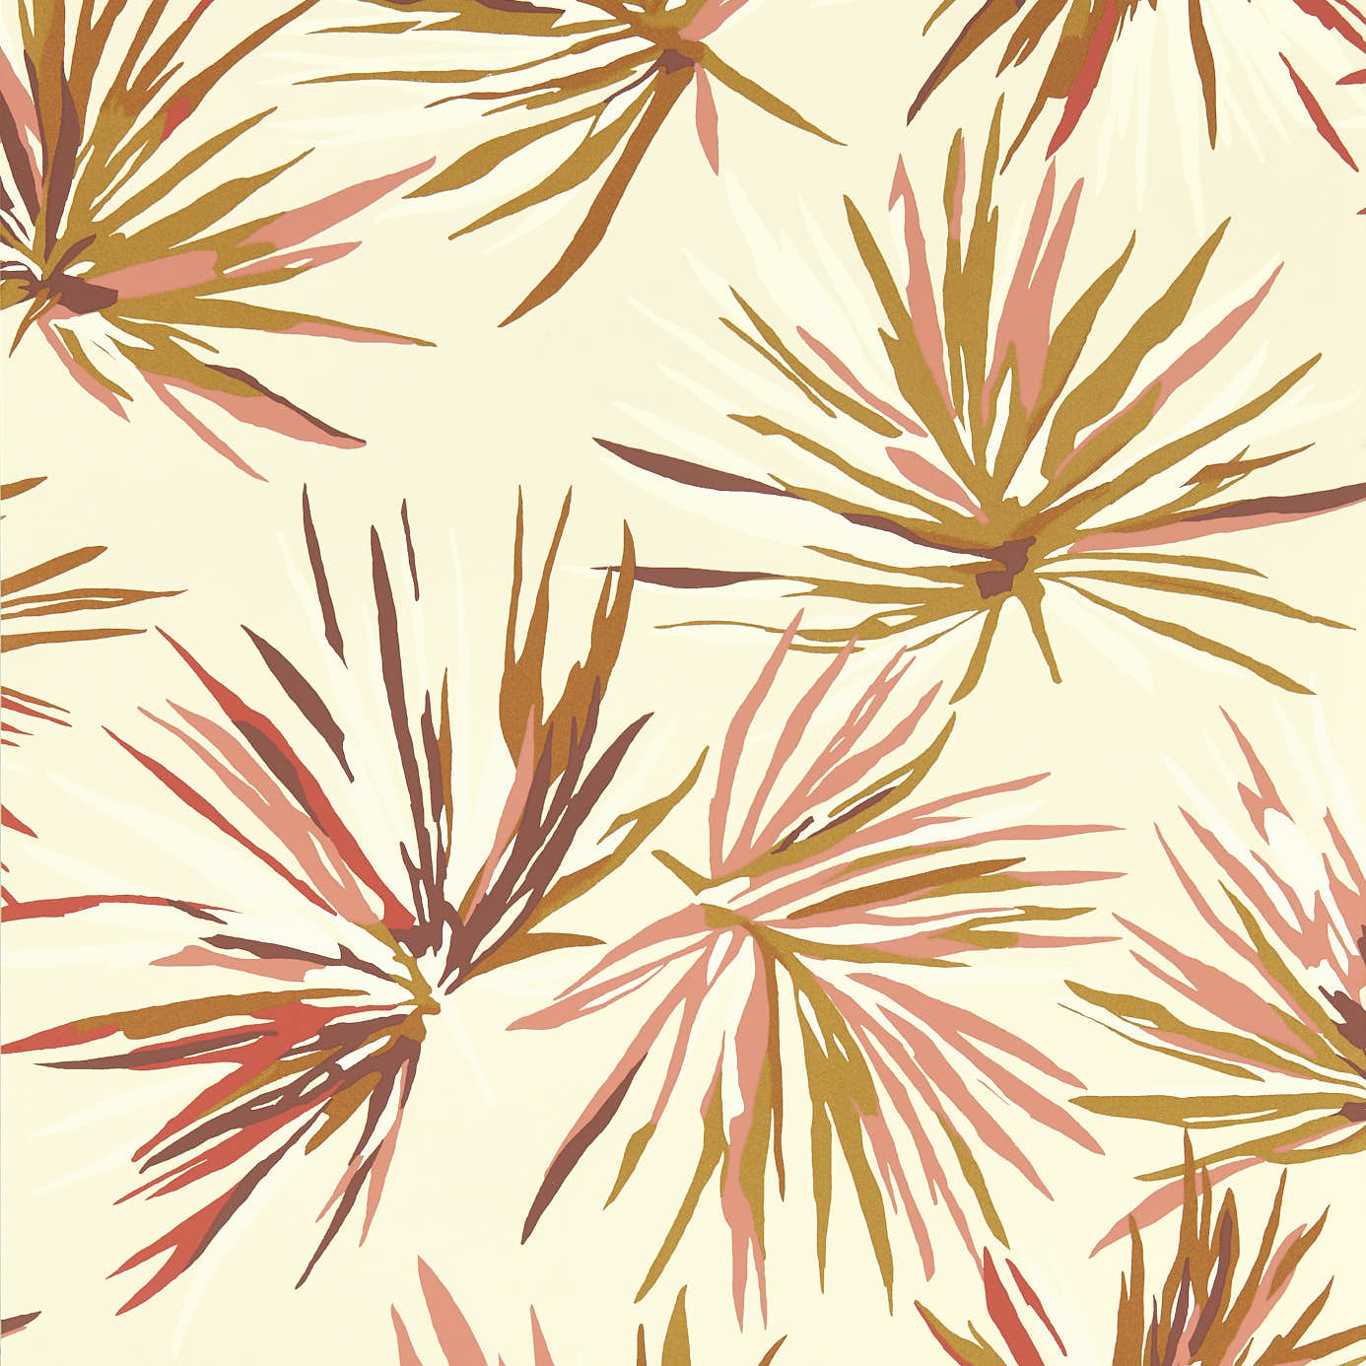 Aucuba Gold/Rosewood/Parchment Wallpaper by HAR